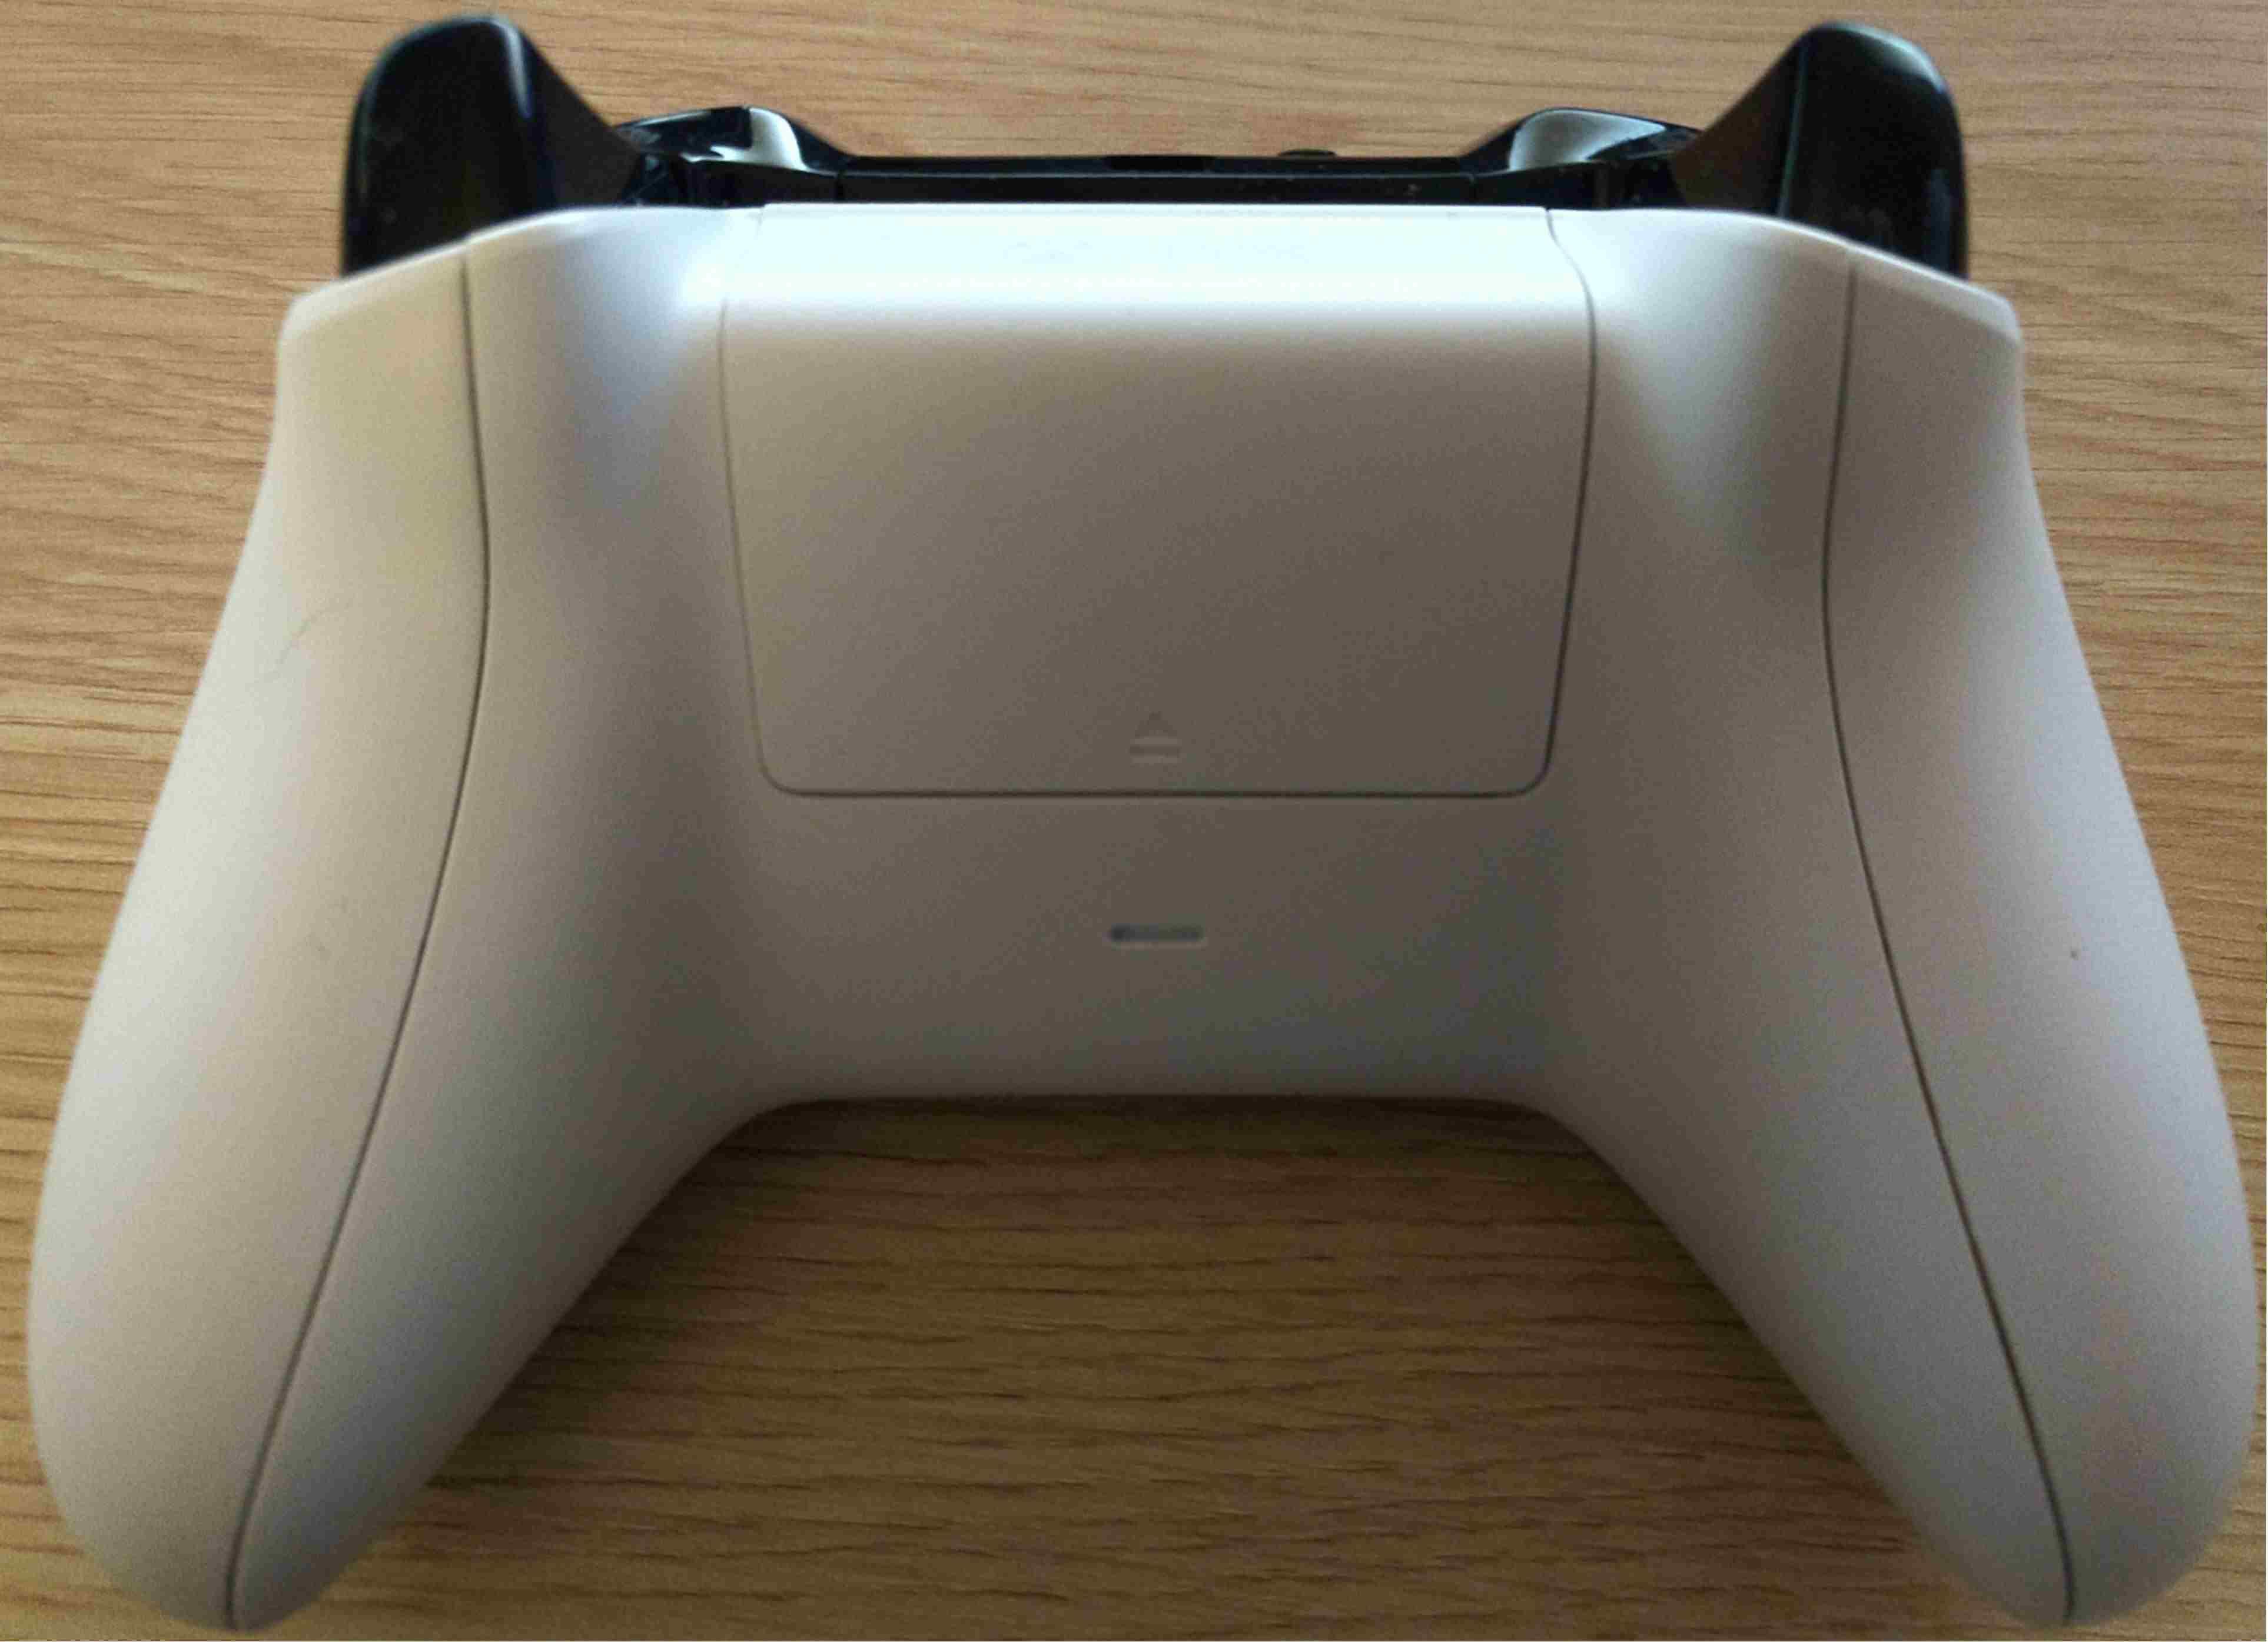 Задняя сторона контроллера Xbox One, показывающая расположение батарейного отсека.